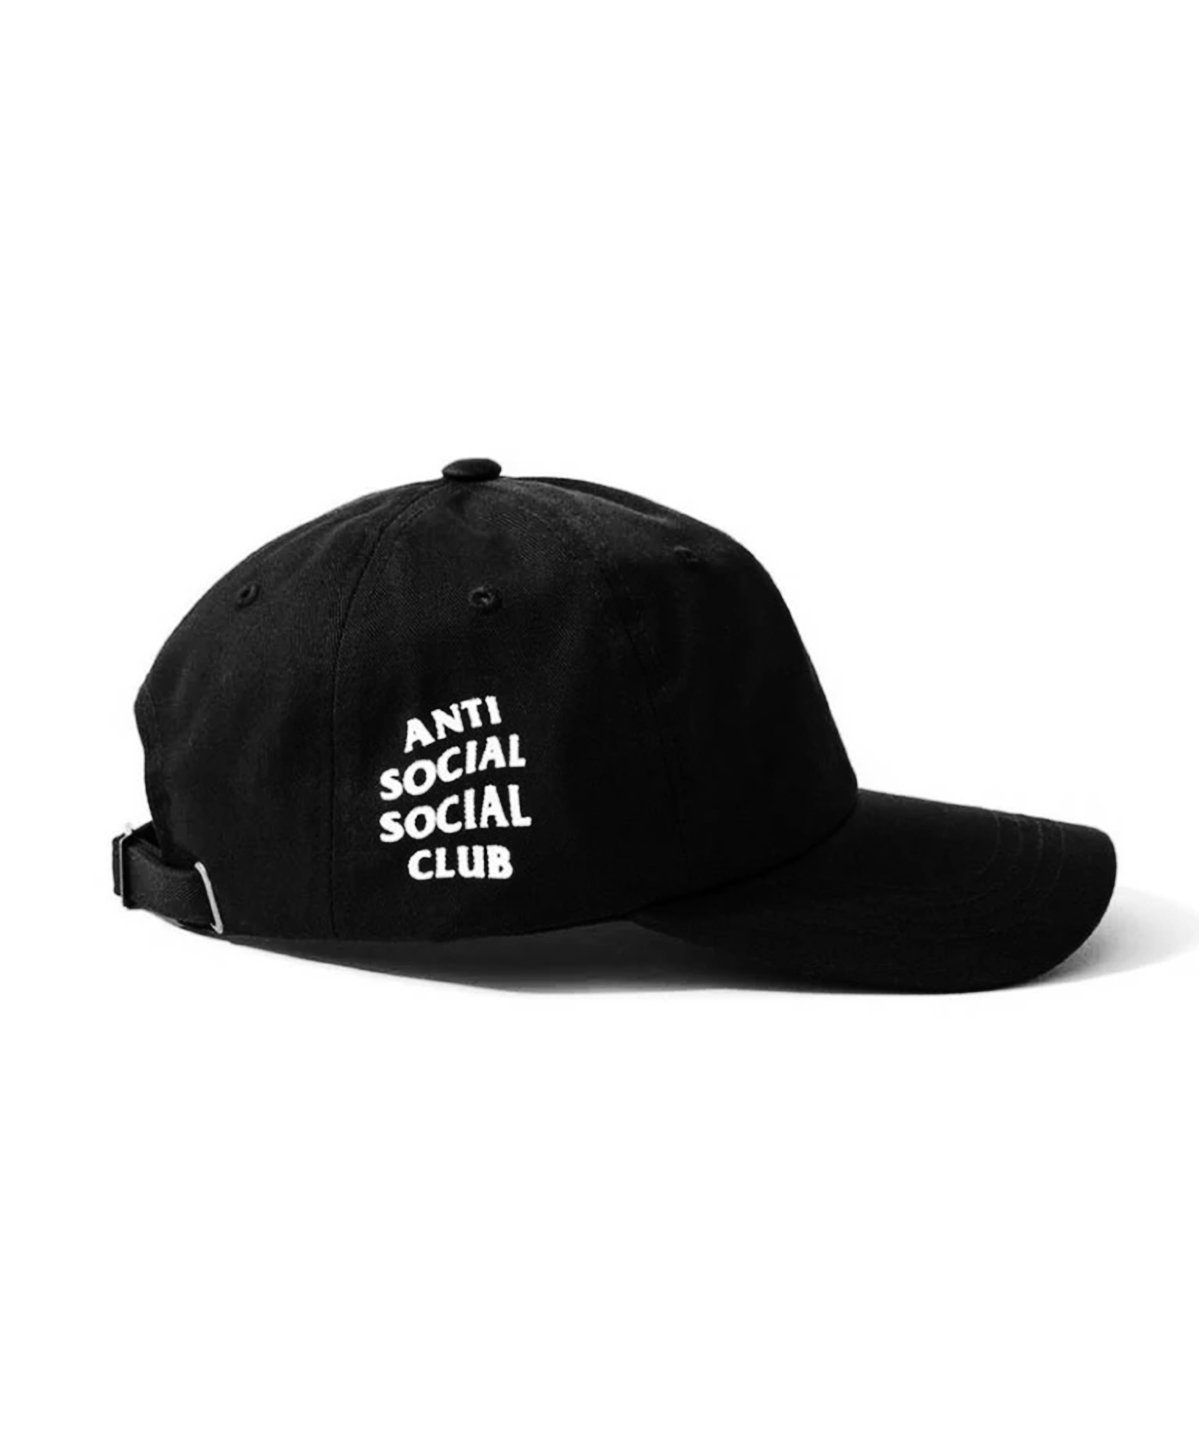 Anti Social Social Club Weird Cap